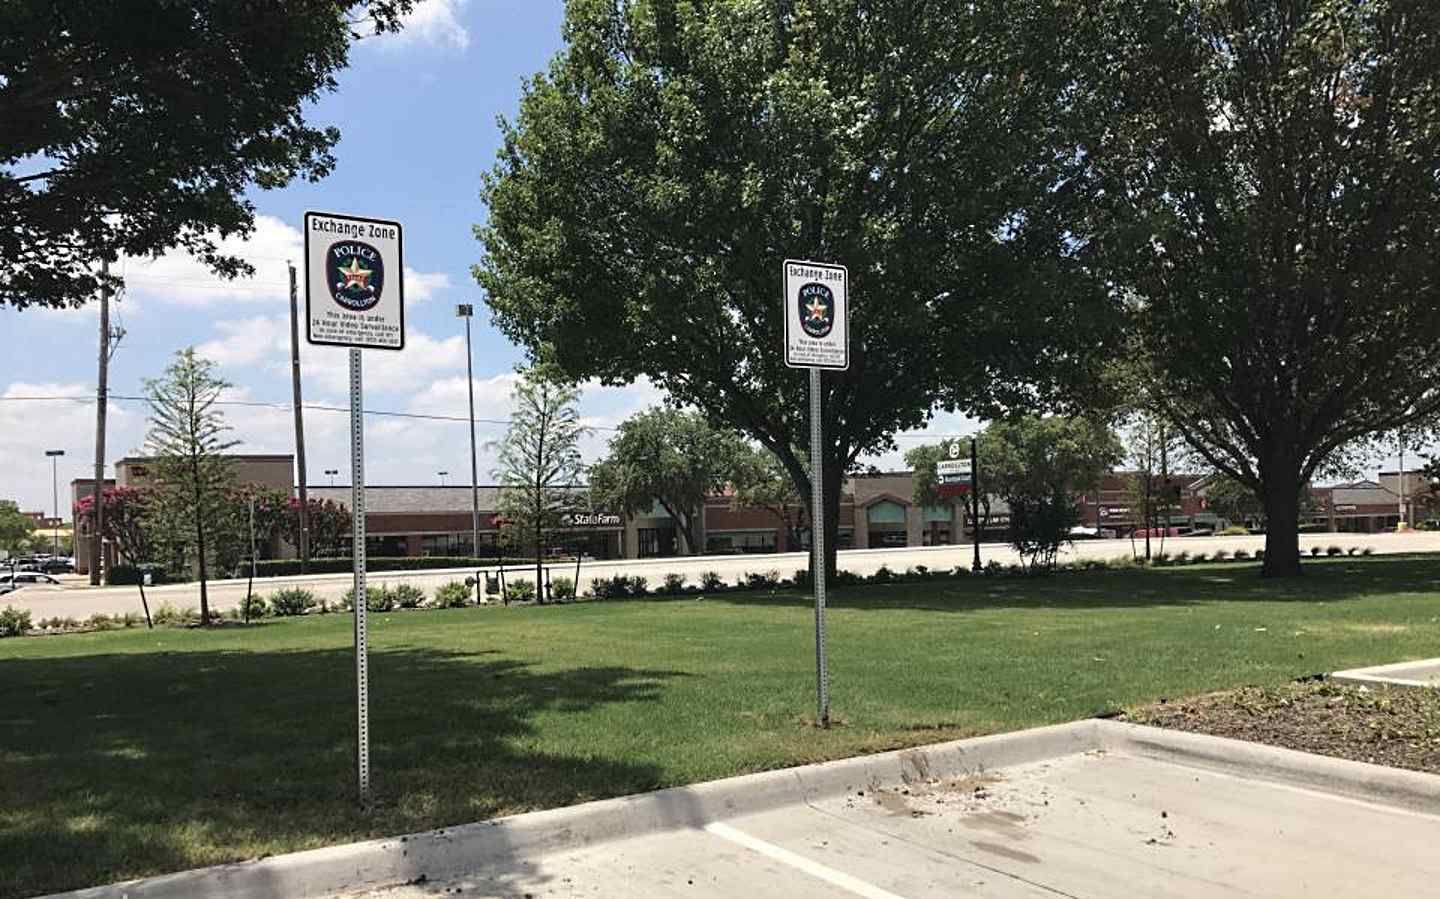 Изображение двух безопасных парковочных мест в полицейском участке.